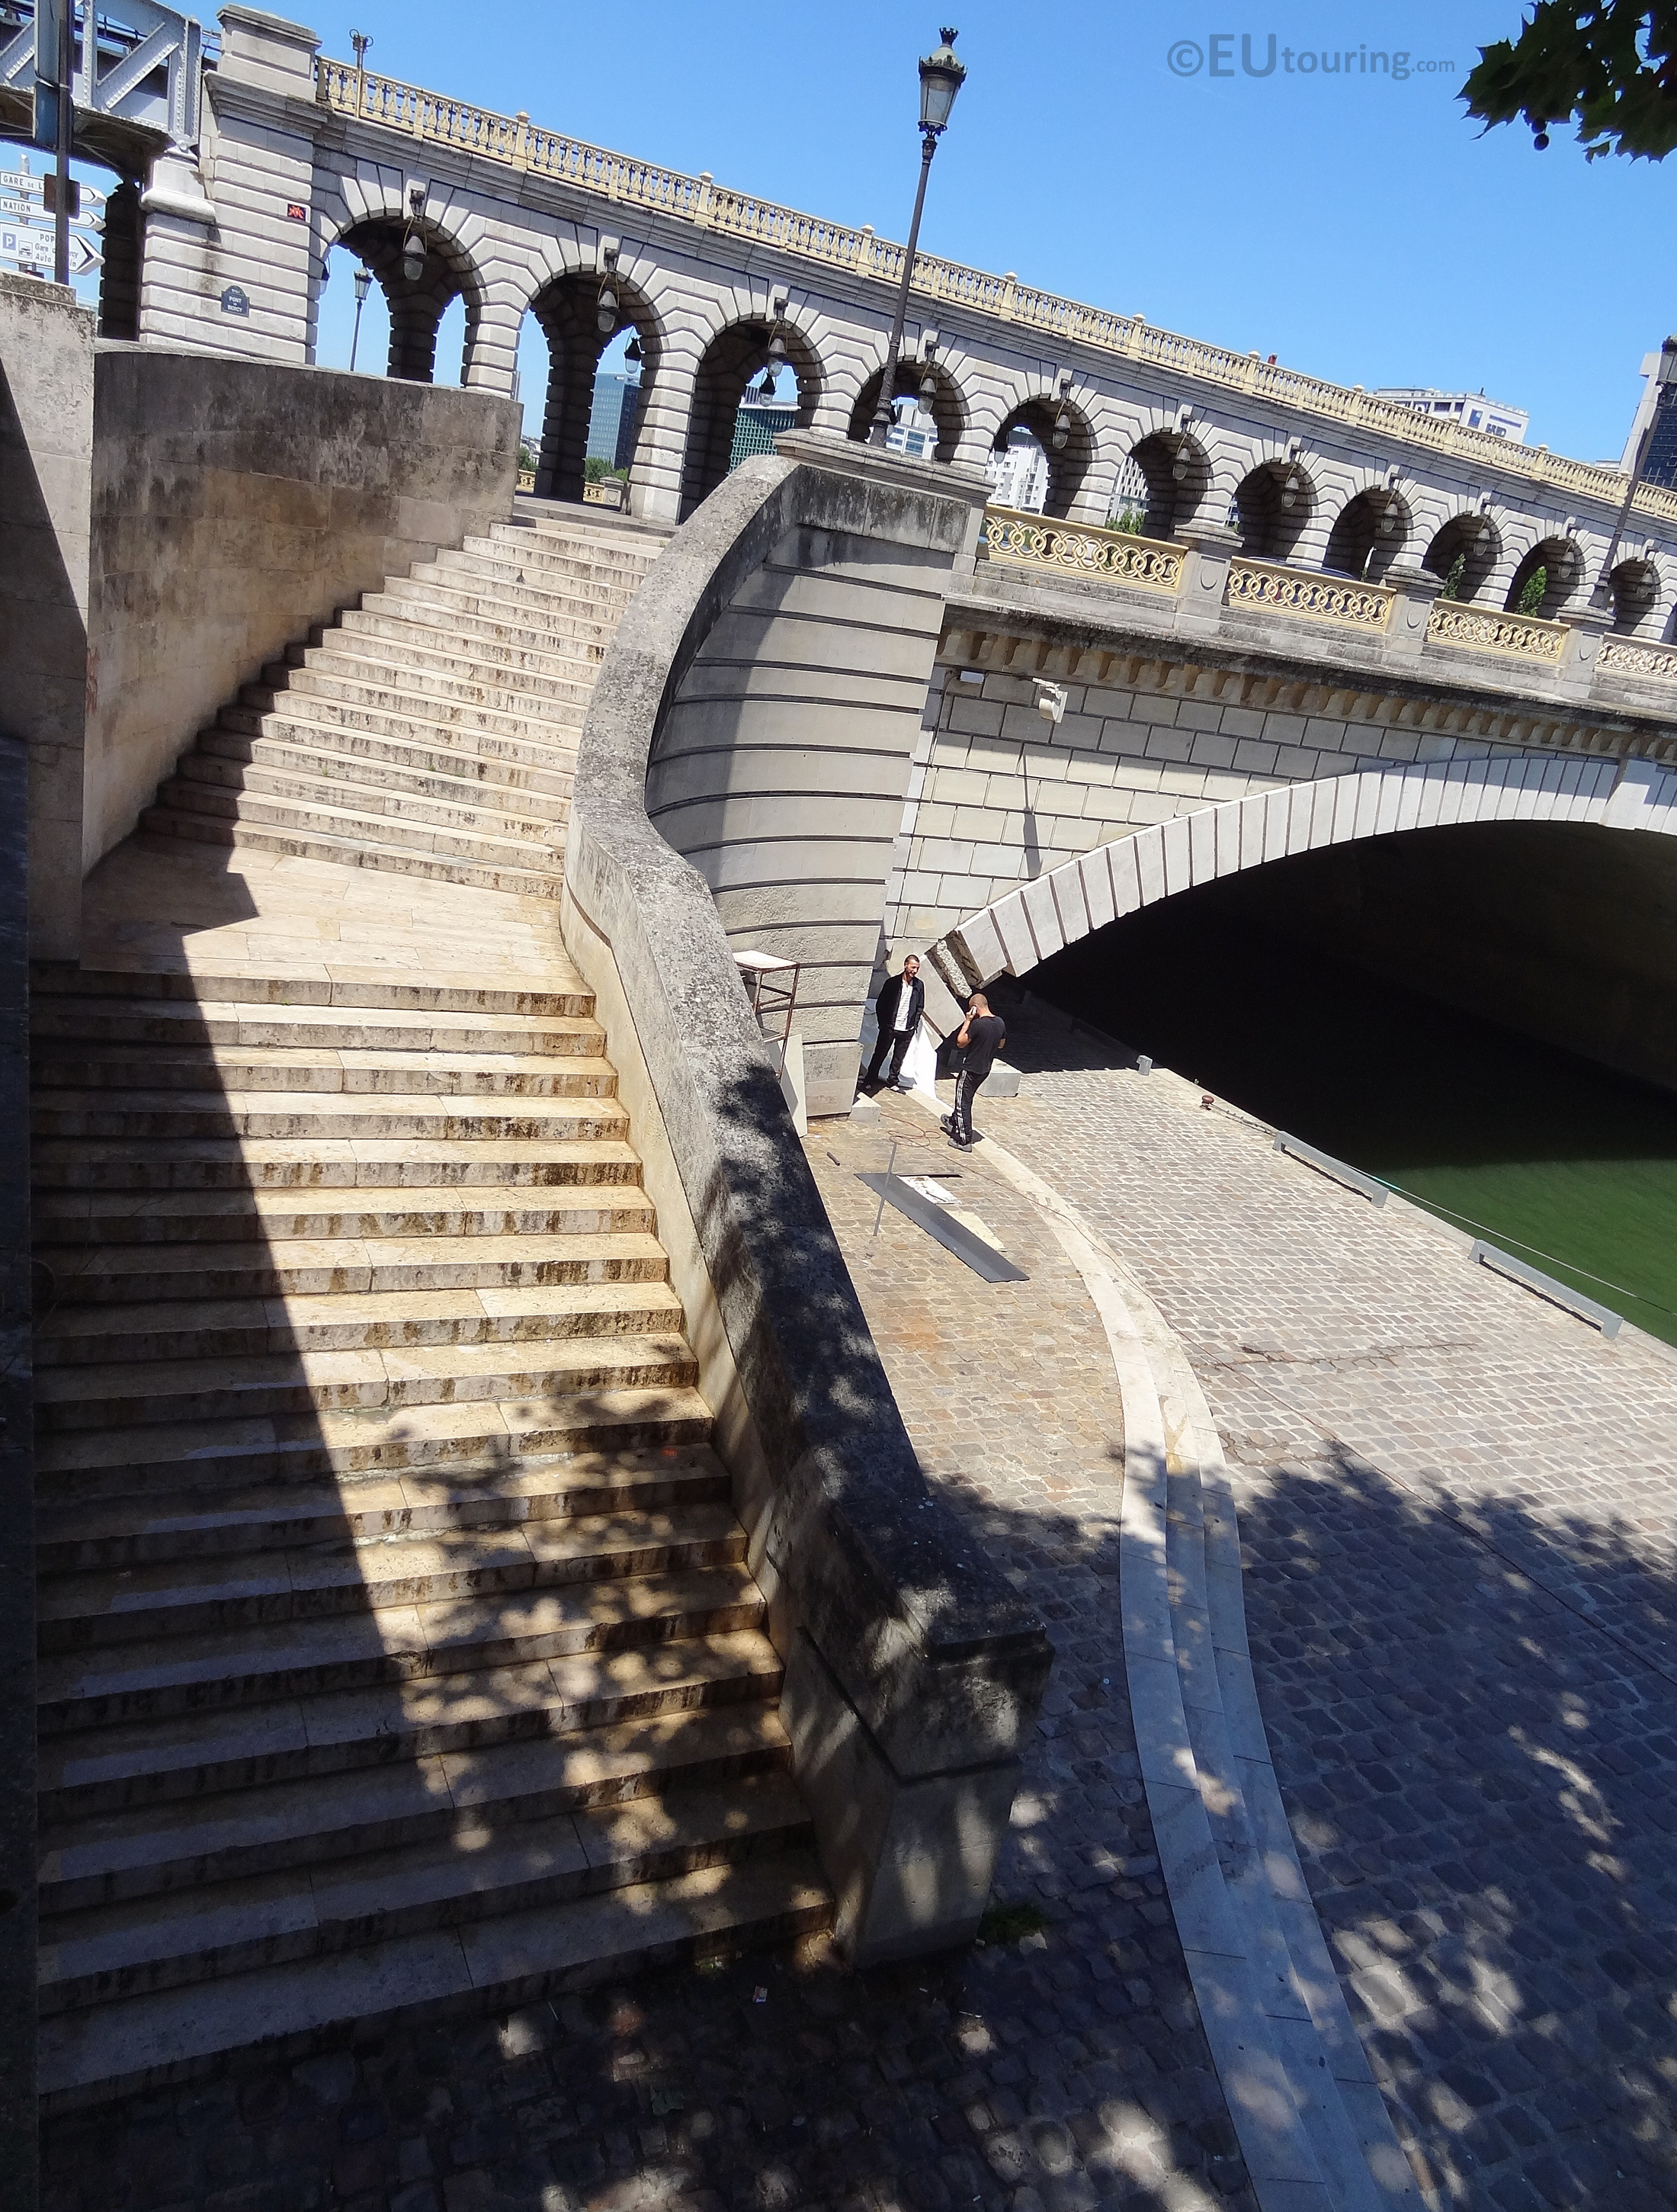 Steps up to the Pont de Bercy